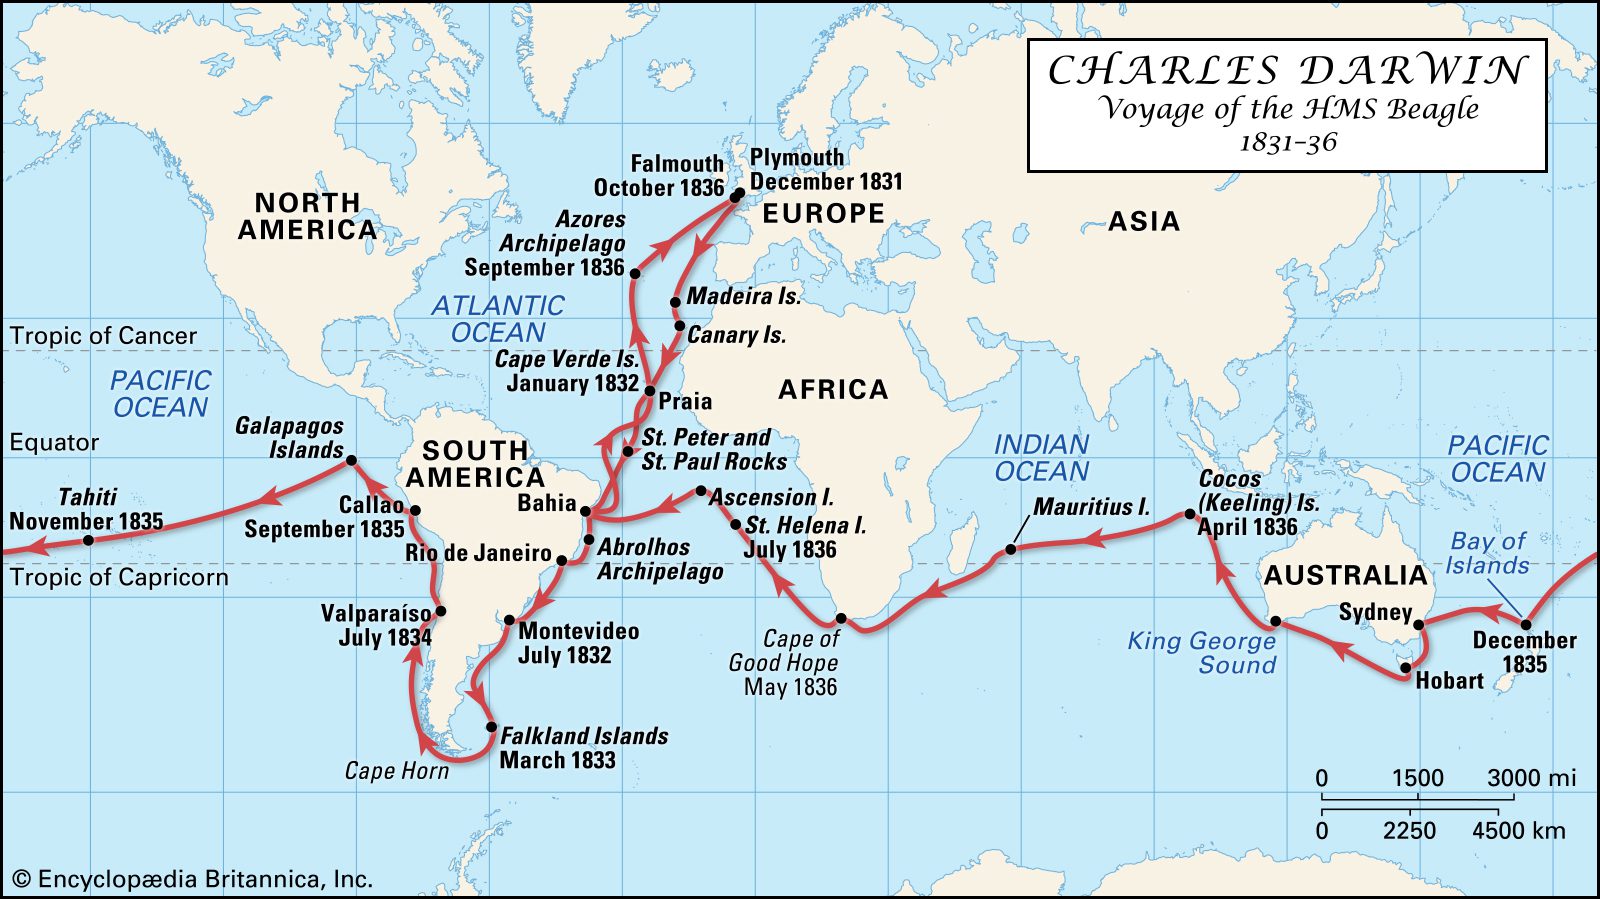 صورة توضيحية لـخريطة رحلة تشارلز داروين لسفينة البيجل خلال الفترة الزمنية 1831-1836.
المصدر: https://www.britannica.com/biography/Charles-Darwin/The-Beagle-voyage